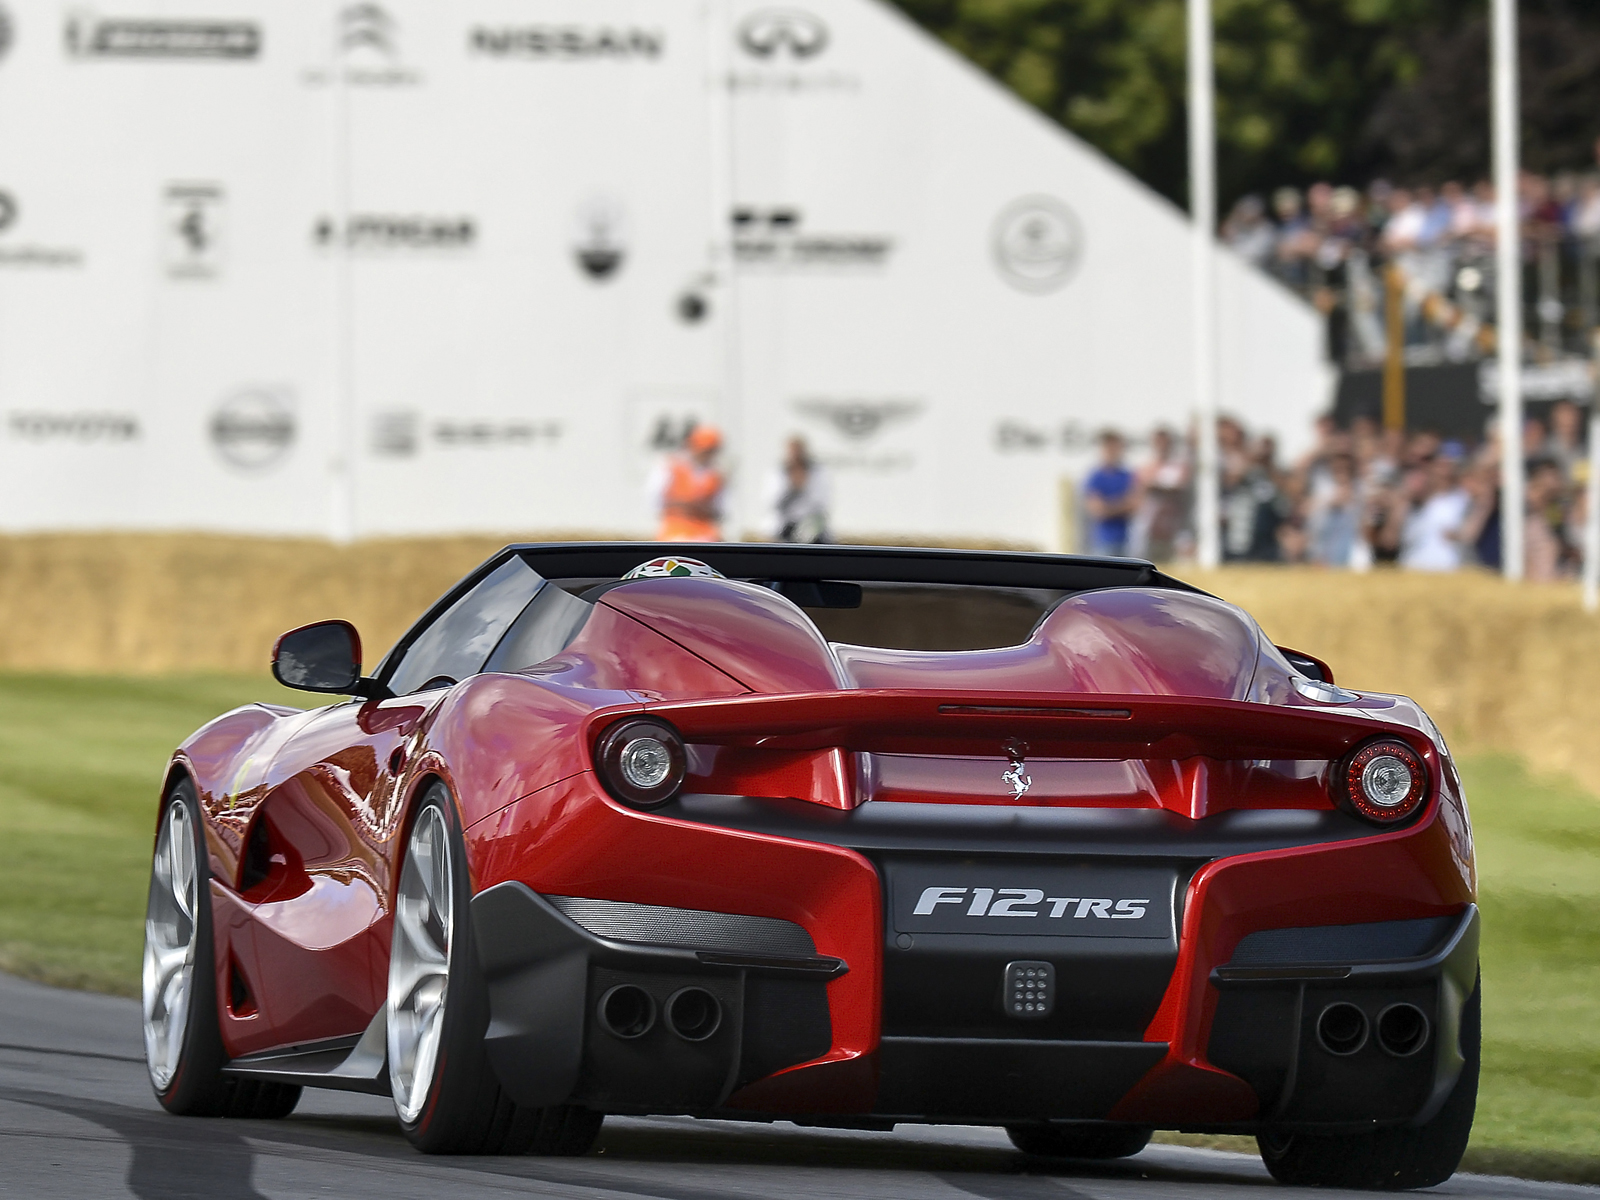 Meilleurs fonds d'écran Ferrari F12 Trs pour l'écran du téléphone